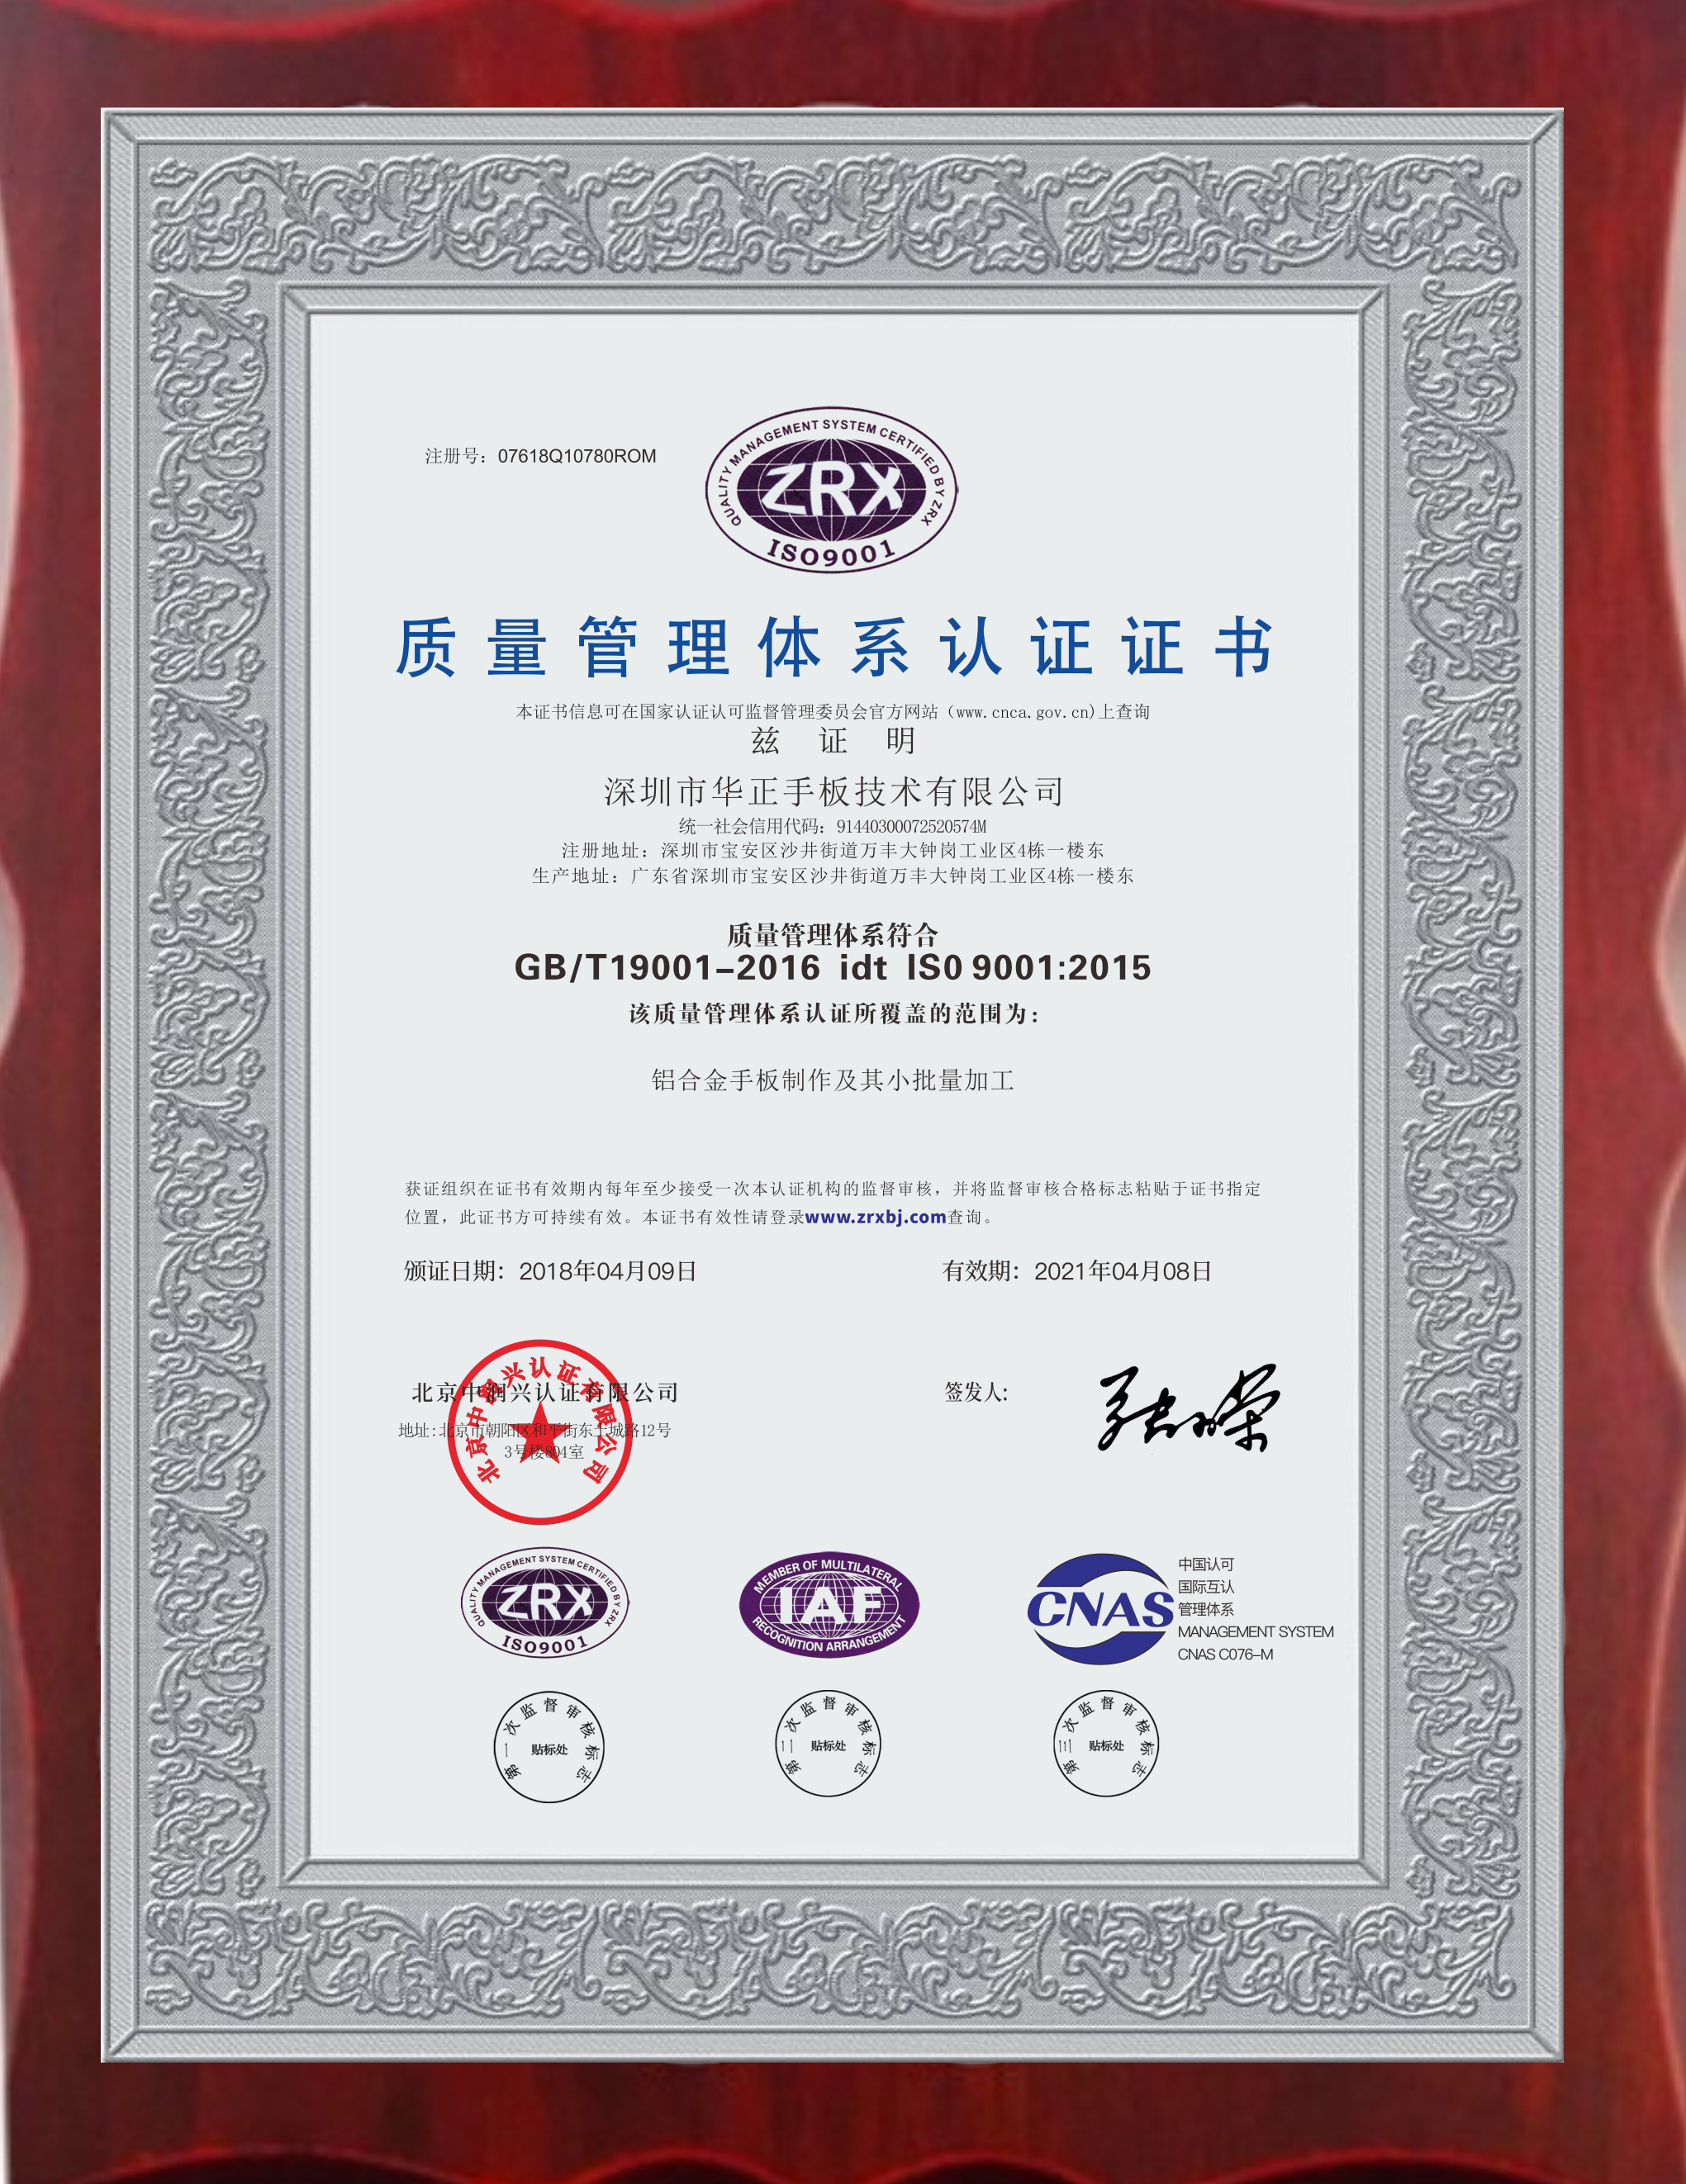 国产精品久久久久久手板的荣誉证书是铝合金手板加工实力的有力证据